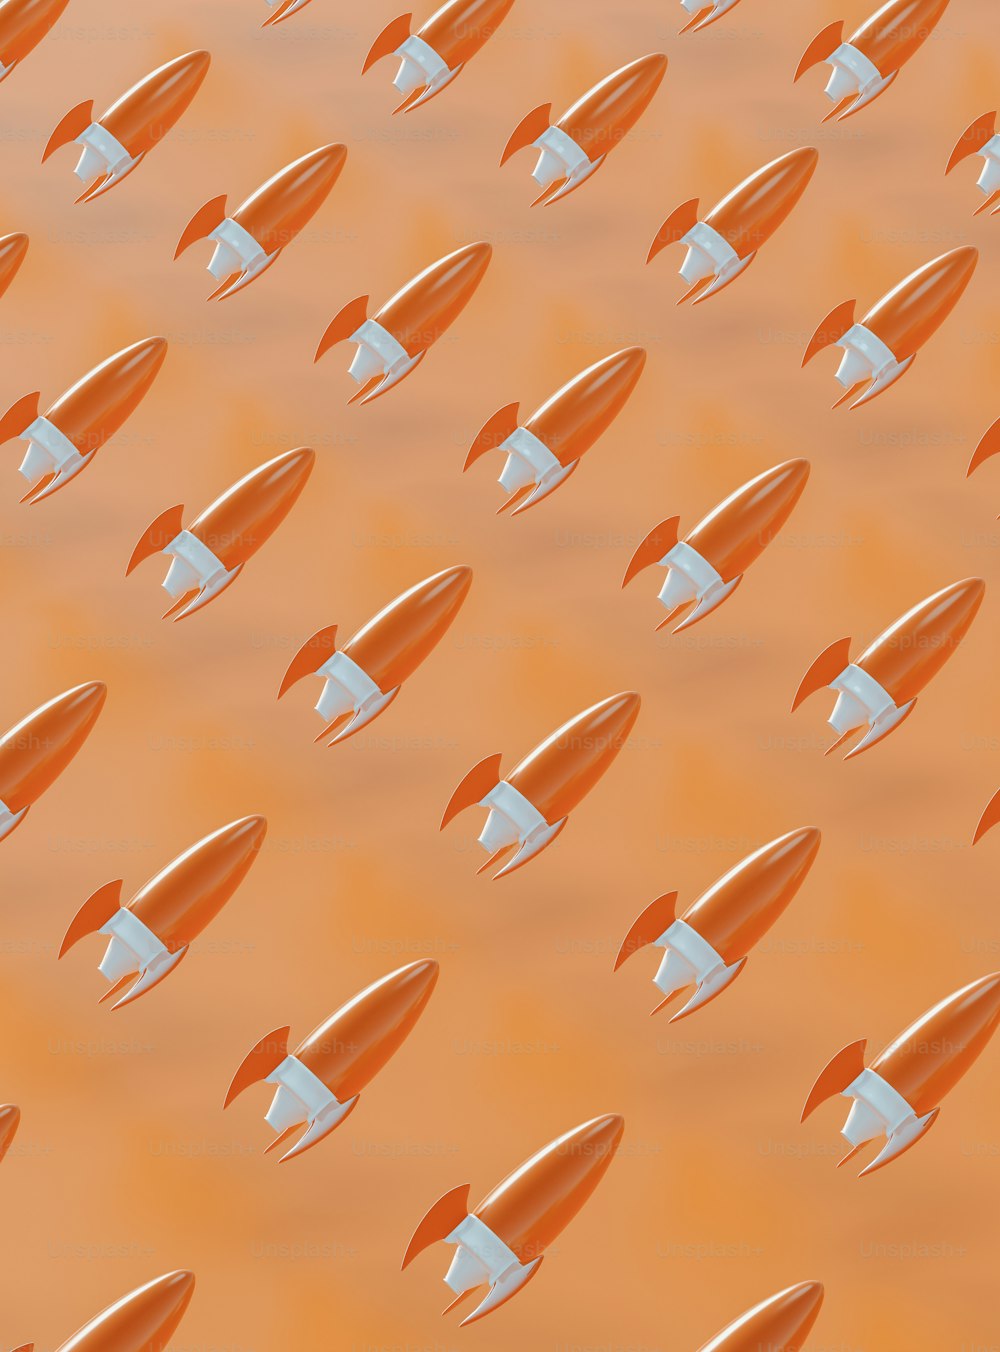 um grupo de foguetes laranja e branco voando pelo ar